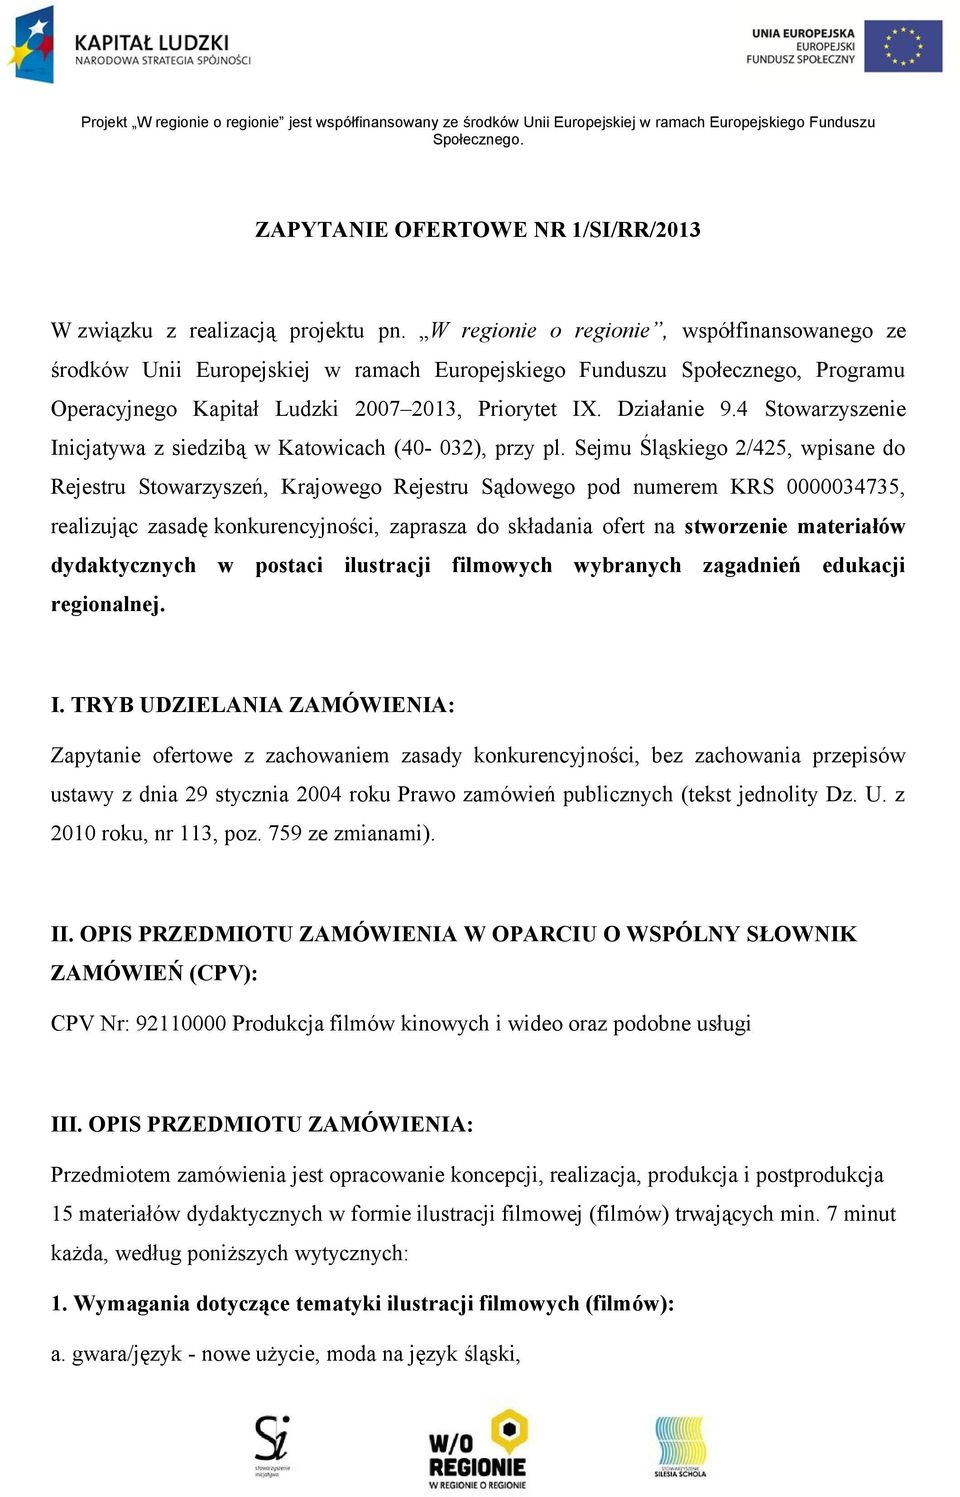 4 Stowarzyszenie Inicjatywa z siedzibą w Katowicach (40-032), przy pl.